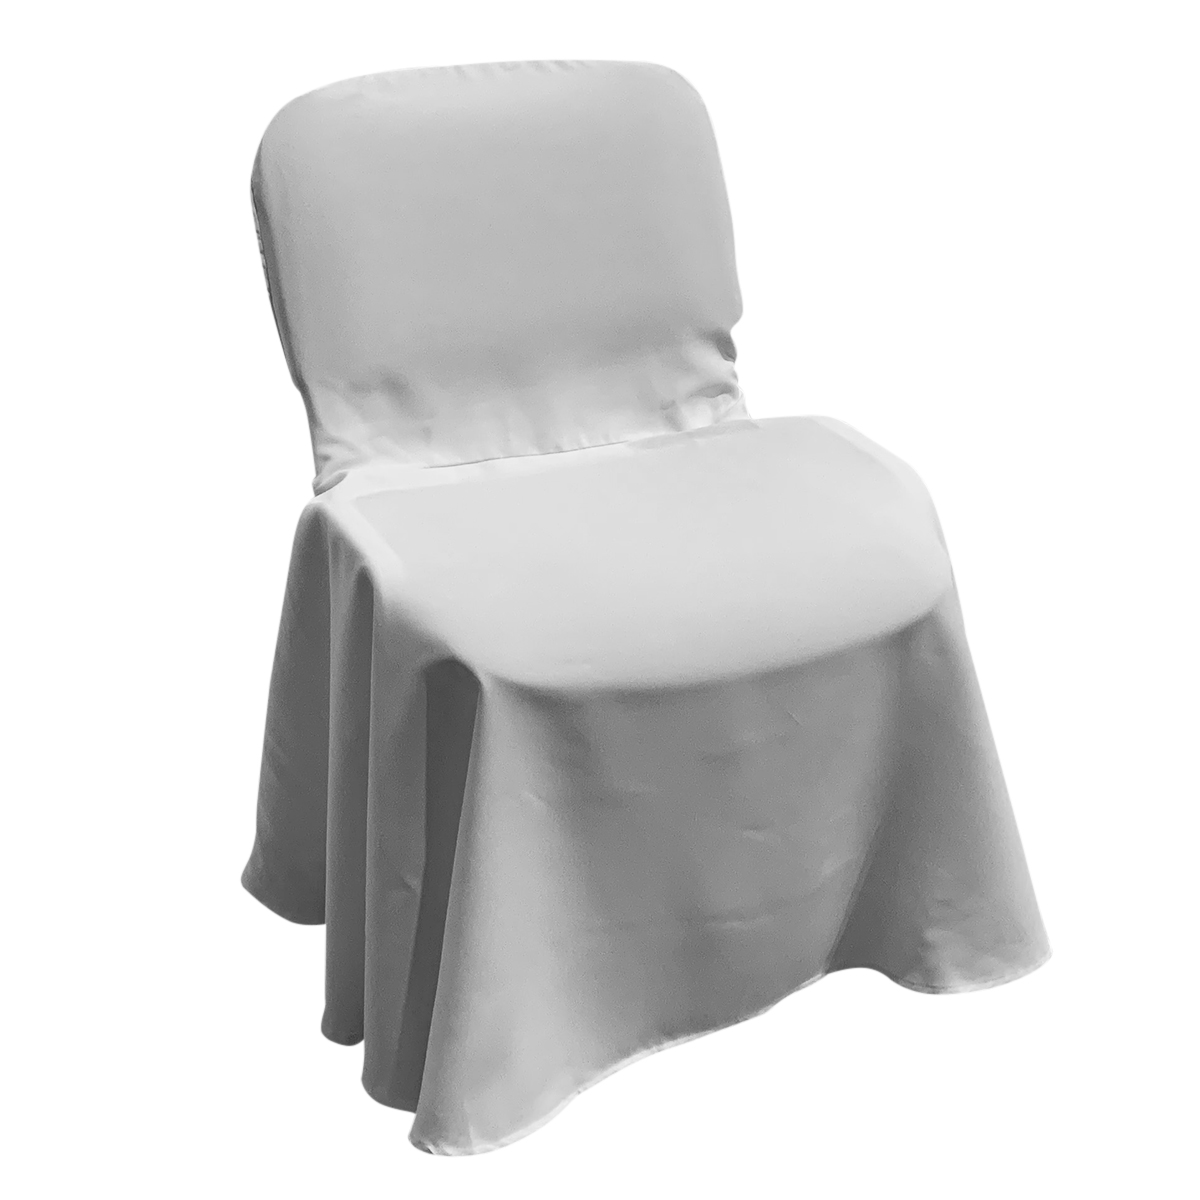 Чехол банкетный для стула Изо белый из ткани в аренду до 345 рублей/сутки